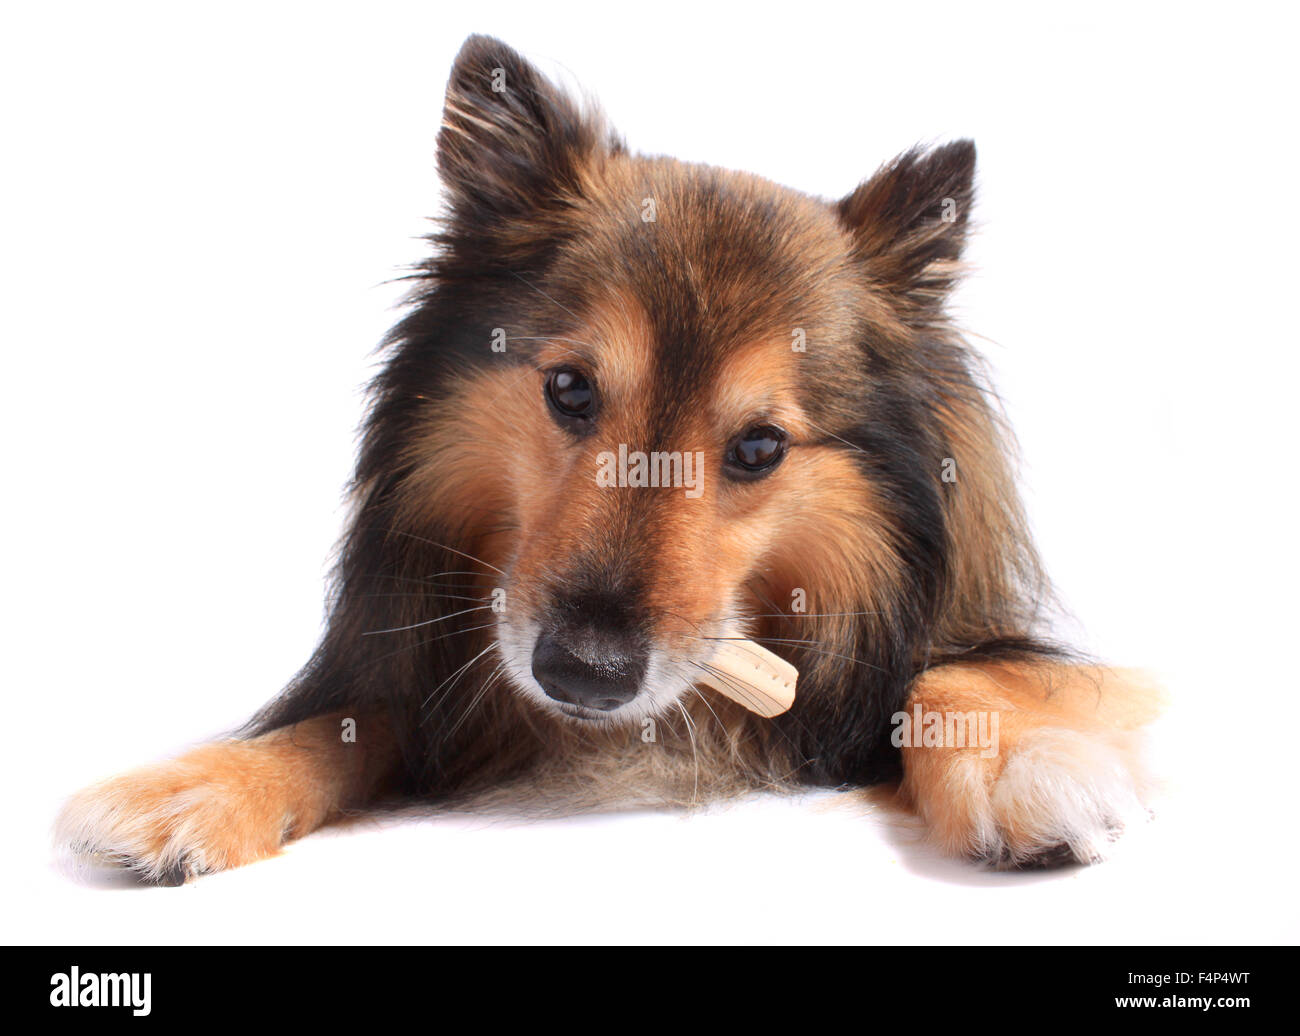 Niedliche kleine Sheltie oder Shetland Sheepdog Essen ein Knochen oder behandeln Stockfoto